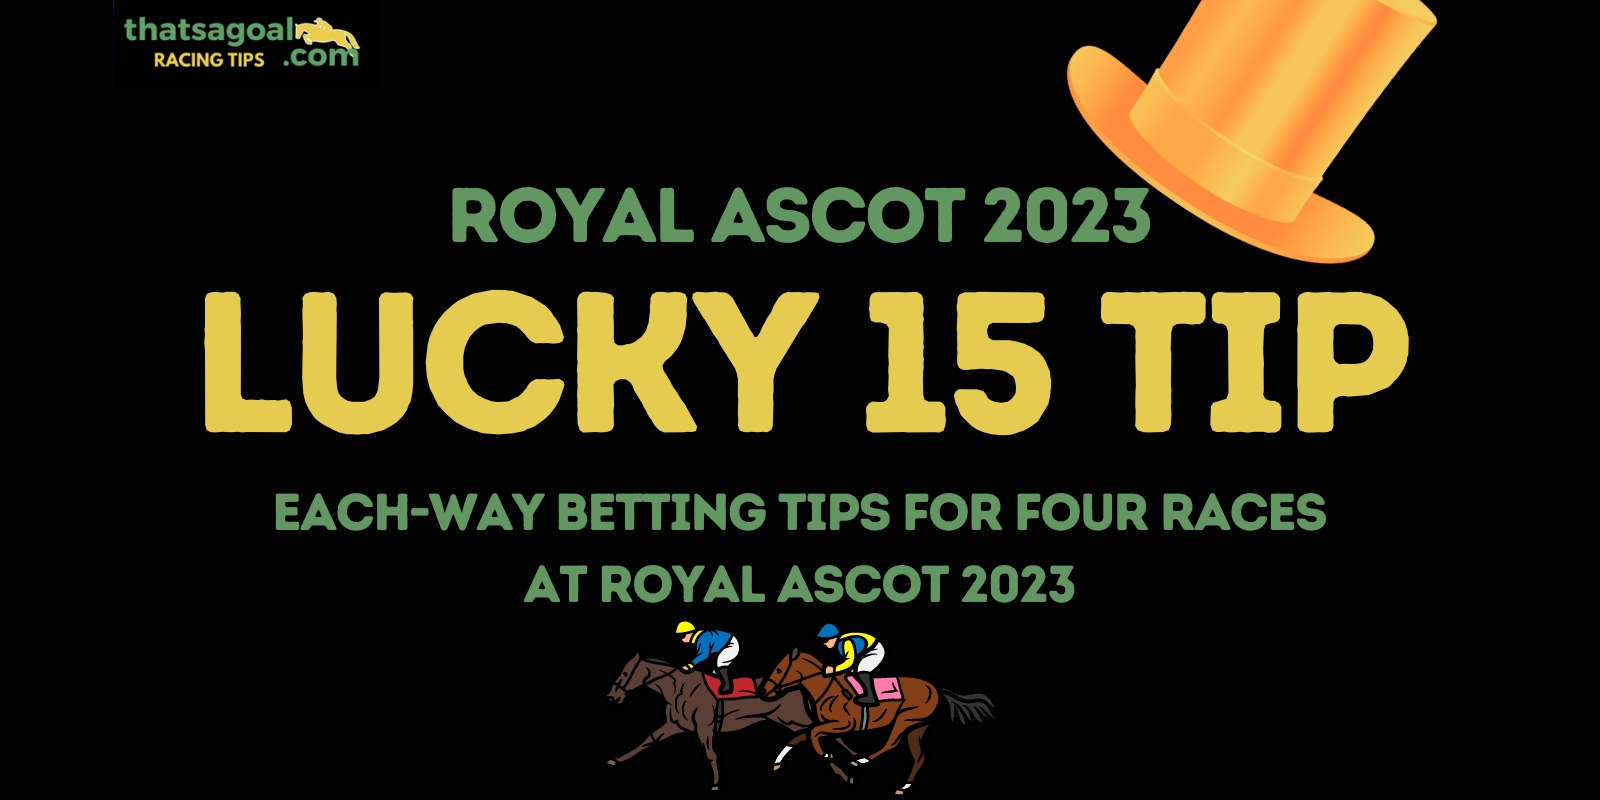 Royal Ascot lucky 15 tips